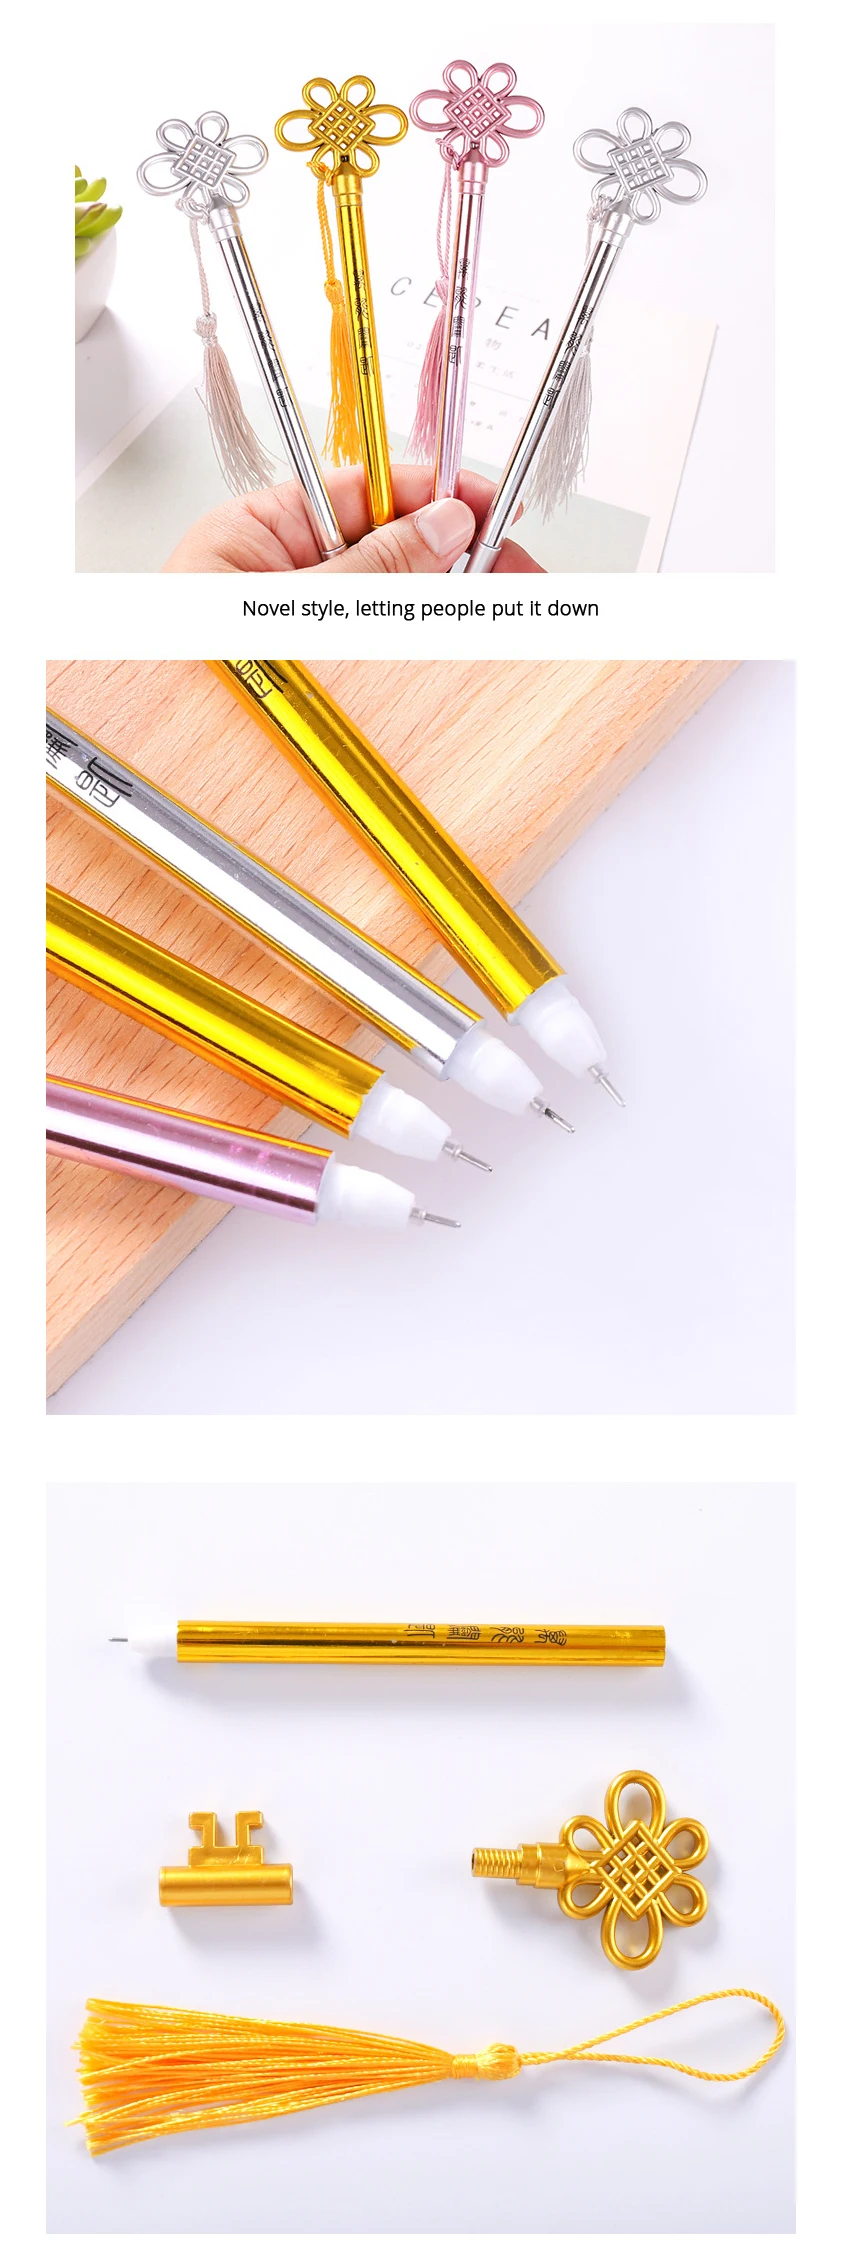 3 шт./лот китайский узел ключи гель для дизайна ручка Набор Kawaii канцелярские ручки пластиковый материал Escolar офисные школьные принадлежности стационарные